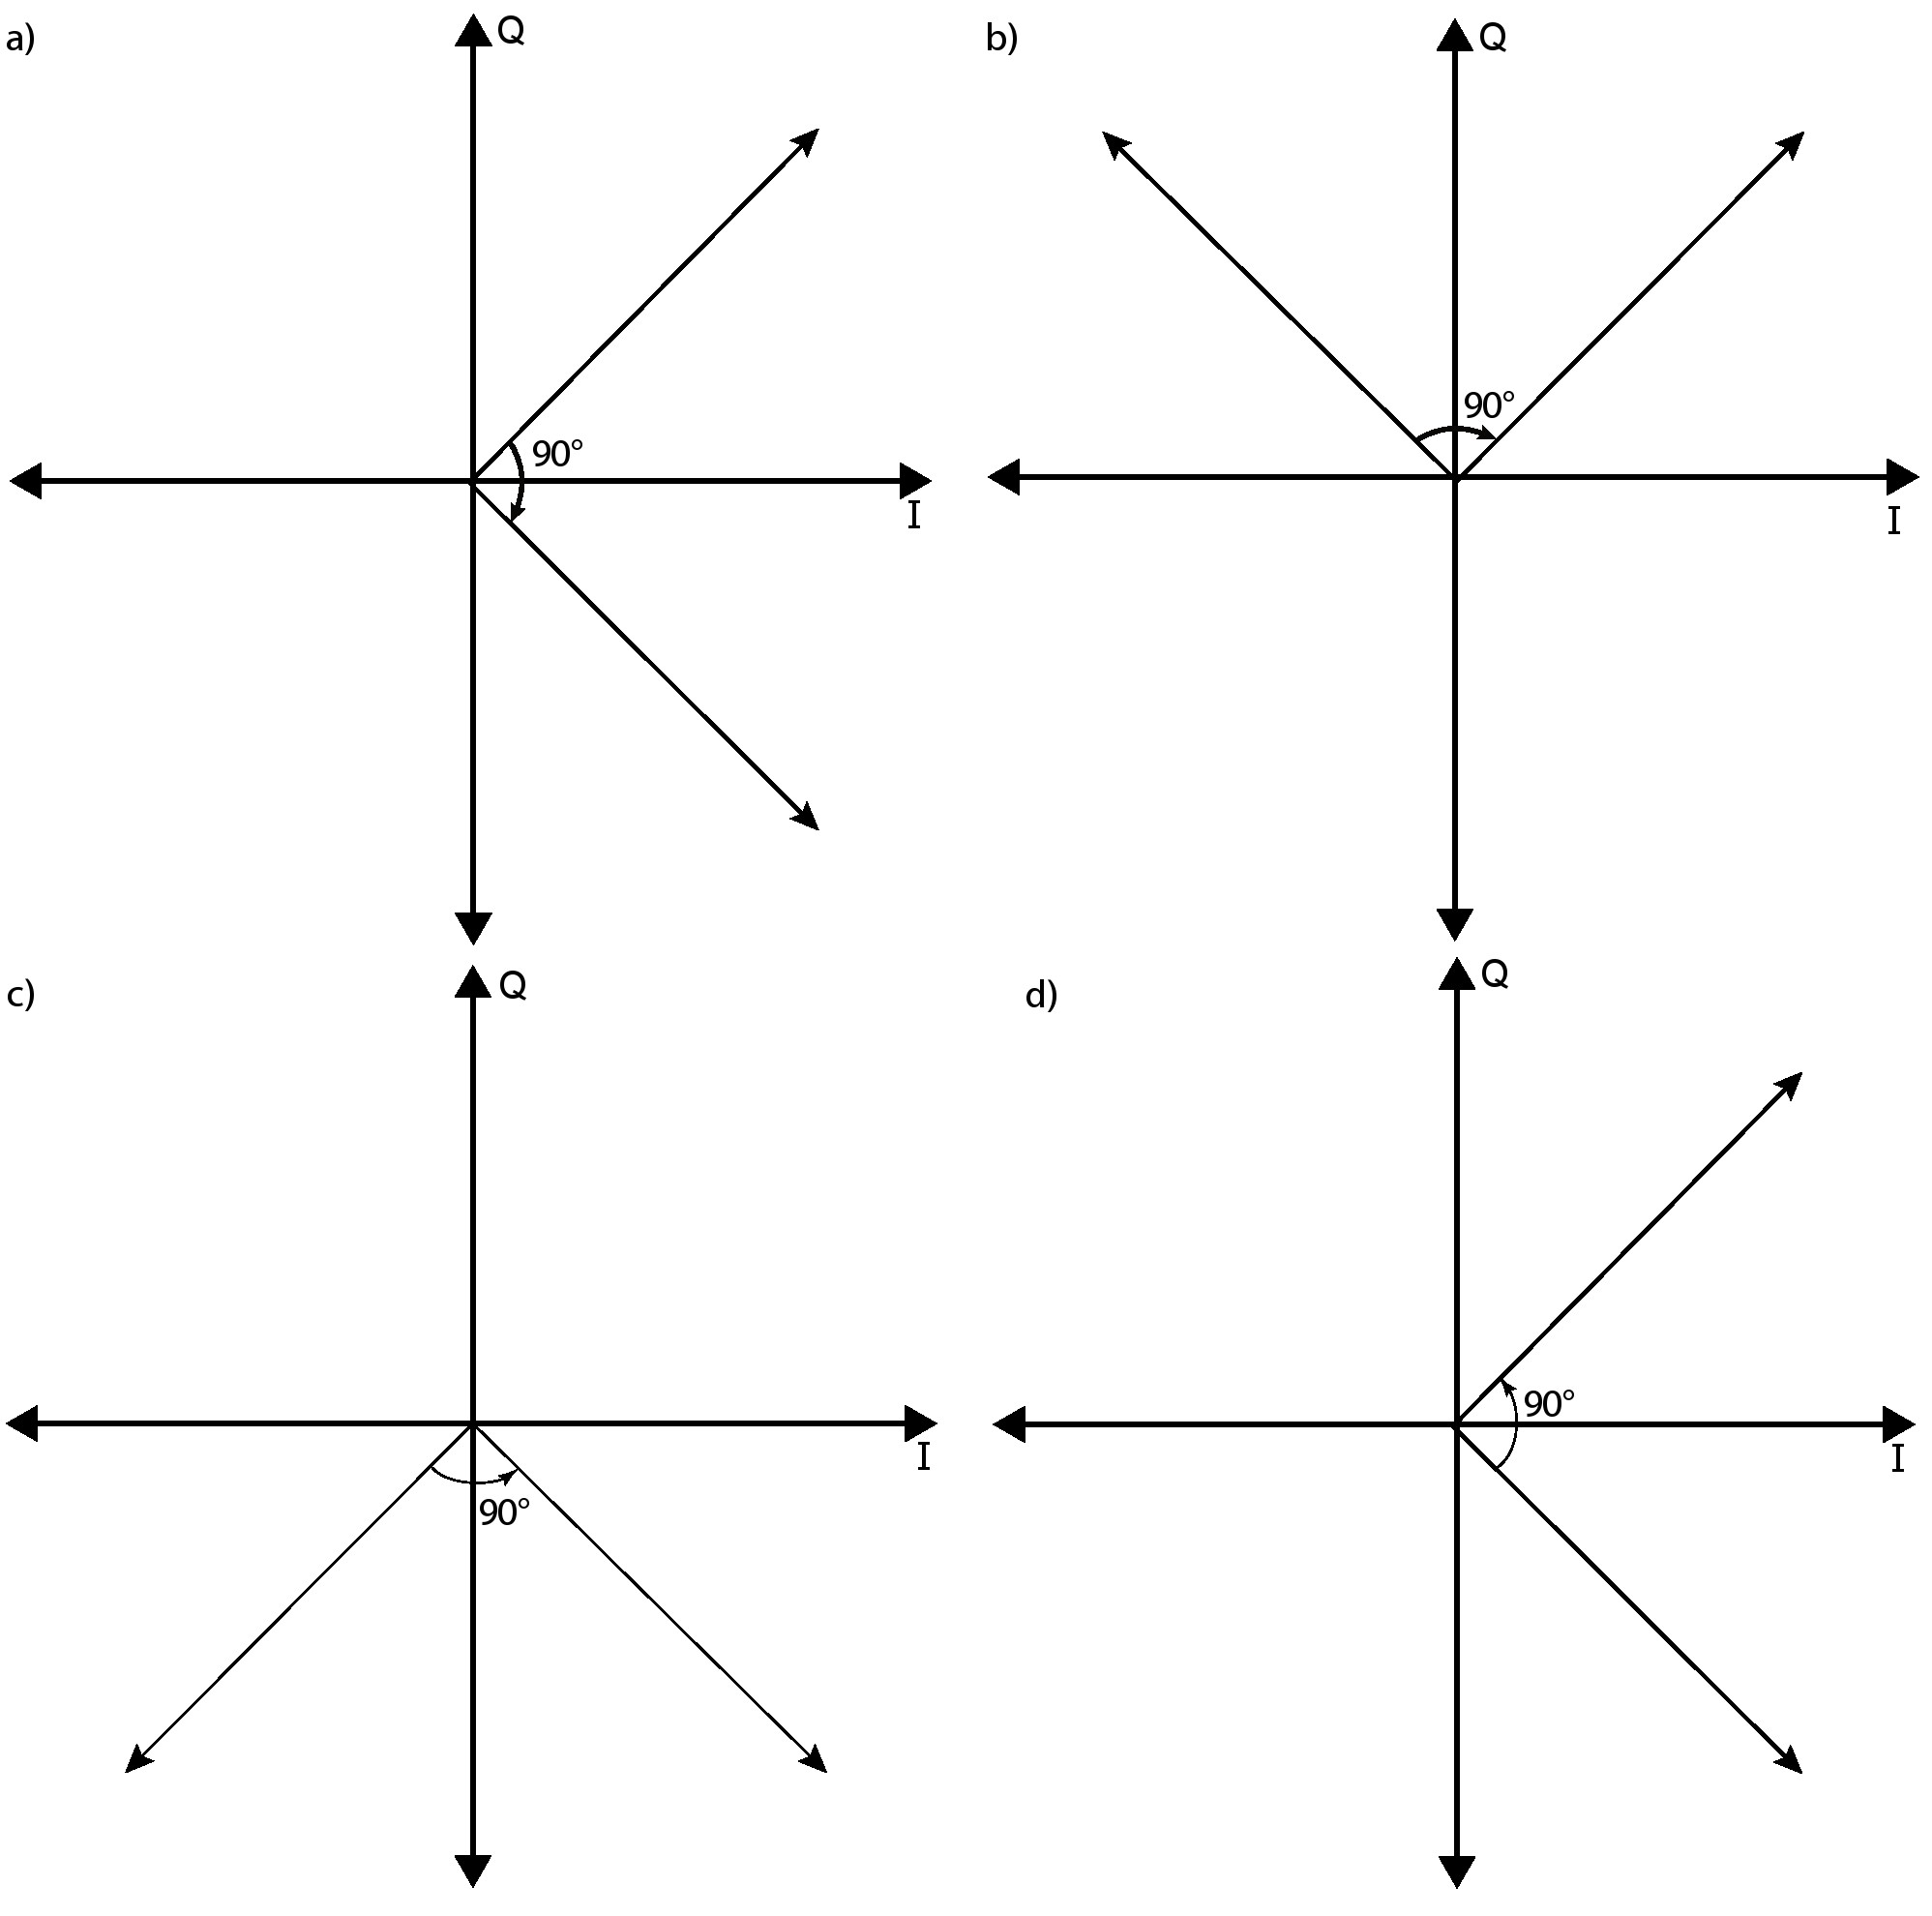 图3.5：笛卡尔坐标系转换为极坐标系的第一步是执行一个正或负90度的旋转，这次旋转的目的是为了使初始矢量到象限I或IV。一旦矢量到了这两个象限，后续的旋转将使矢量到达最终角度0◦。此时，初始矢量的径向值是最终旋转矢量的x值，初始矢量的角度是CORDIC所做旋转角度累加和。a)和b)展示了一个初始y值为正的例子，这意味着矢量位于象限I或II中。旋转-90度将它们旋转到相应象限中。c)和d)给出了类似的情况，当初始矢量y值为负值时，我们希望旋转+90度使矢量转到第I或第IV象限。 